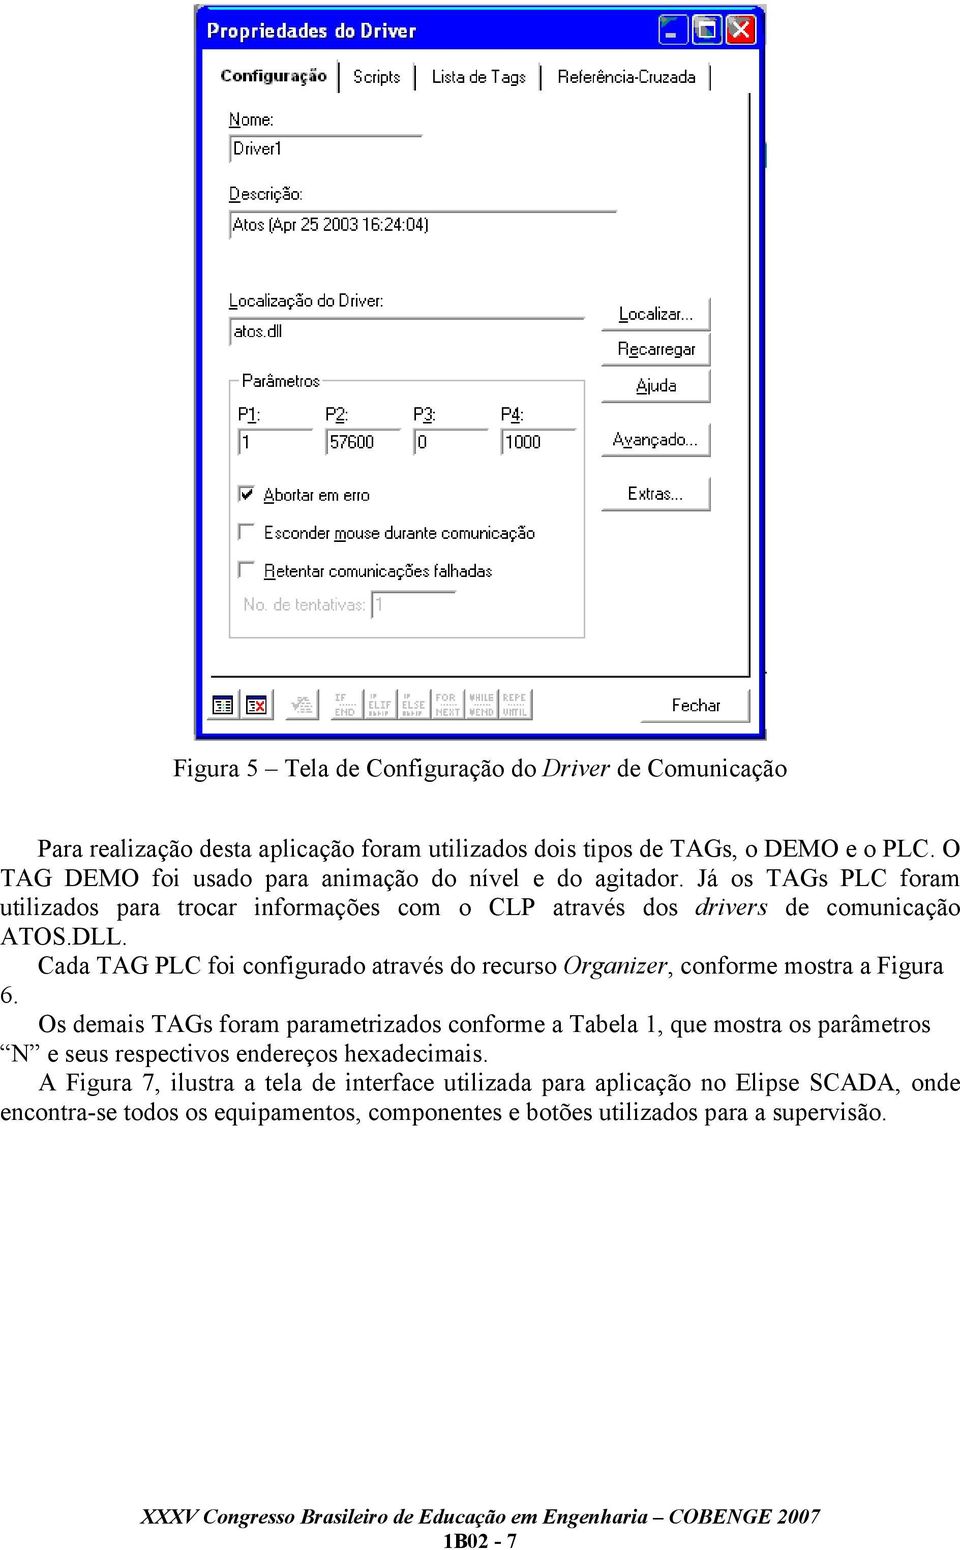 Cada TAG PLC foi configurado através do recurso Organizer, conforme mostra a Figura 6.